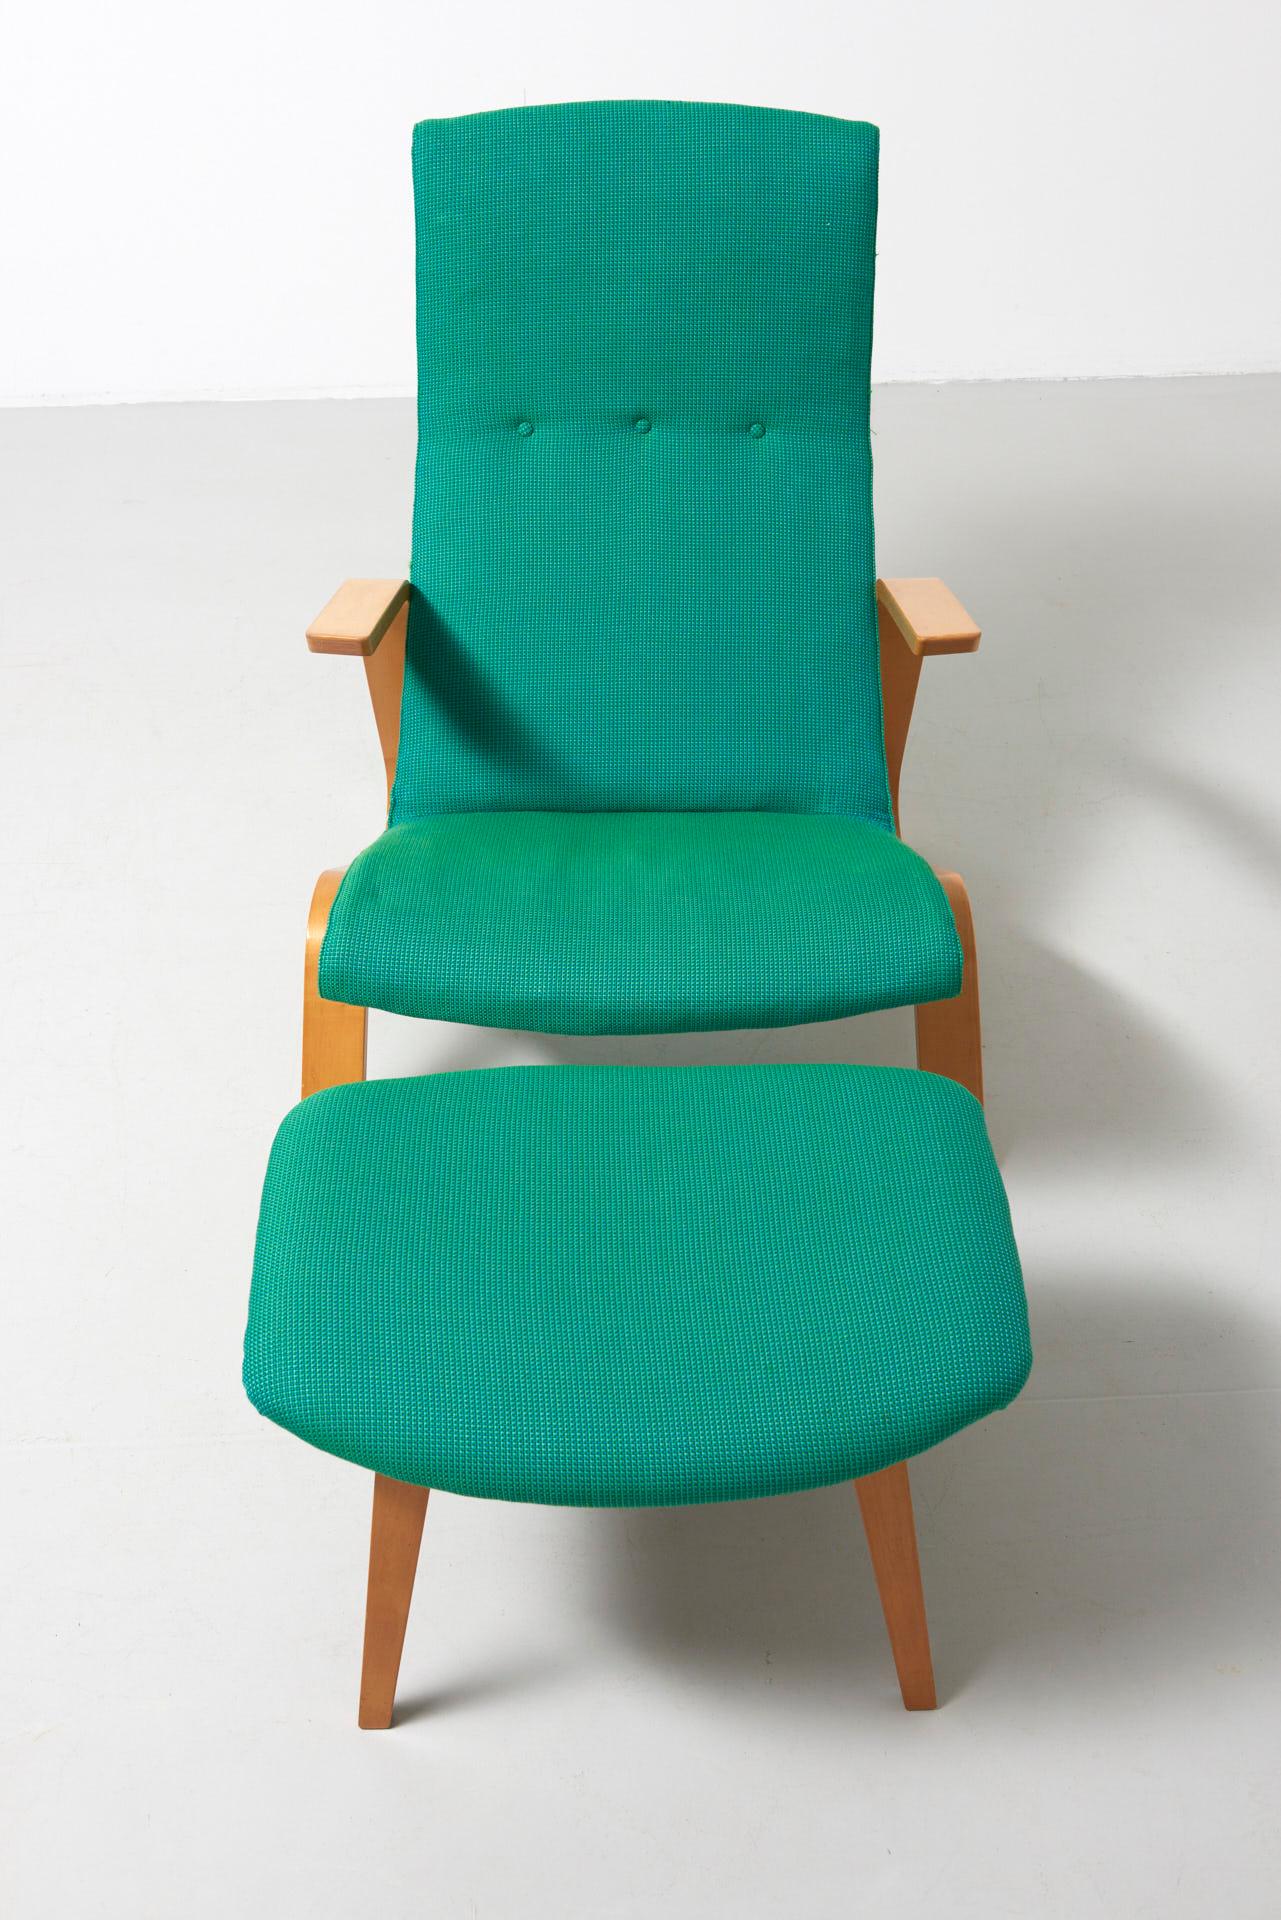 Grasshopper Chair with Ottoman by Eero Saarinen for Knoll International (Dänisch)